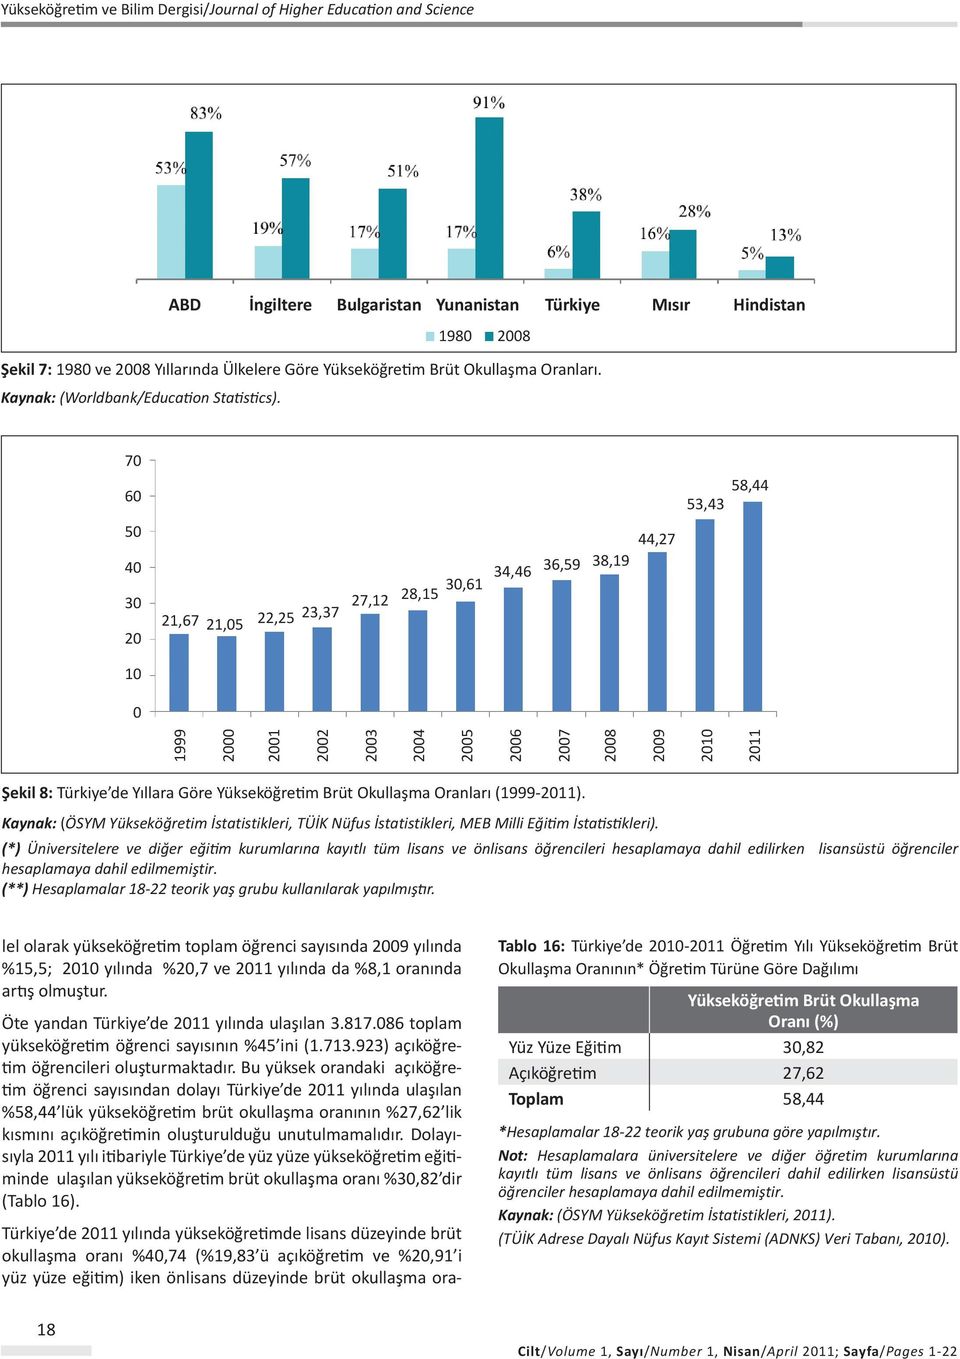 Yükseköğretim Brüt Okullaşma Oranları (1999-2011). Kaynak: (ÖSYM Yükseköğretim İstatistikleri, TÜİK Nüfus İstatistikleri, MEB Milli Eğitim İstatistikleri).